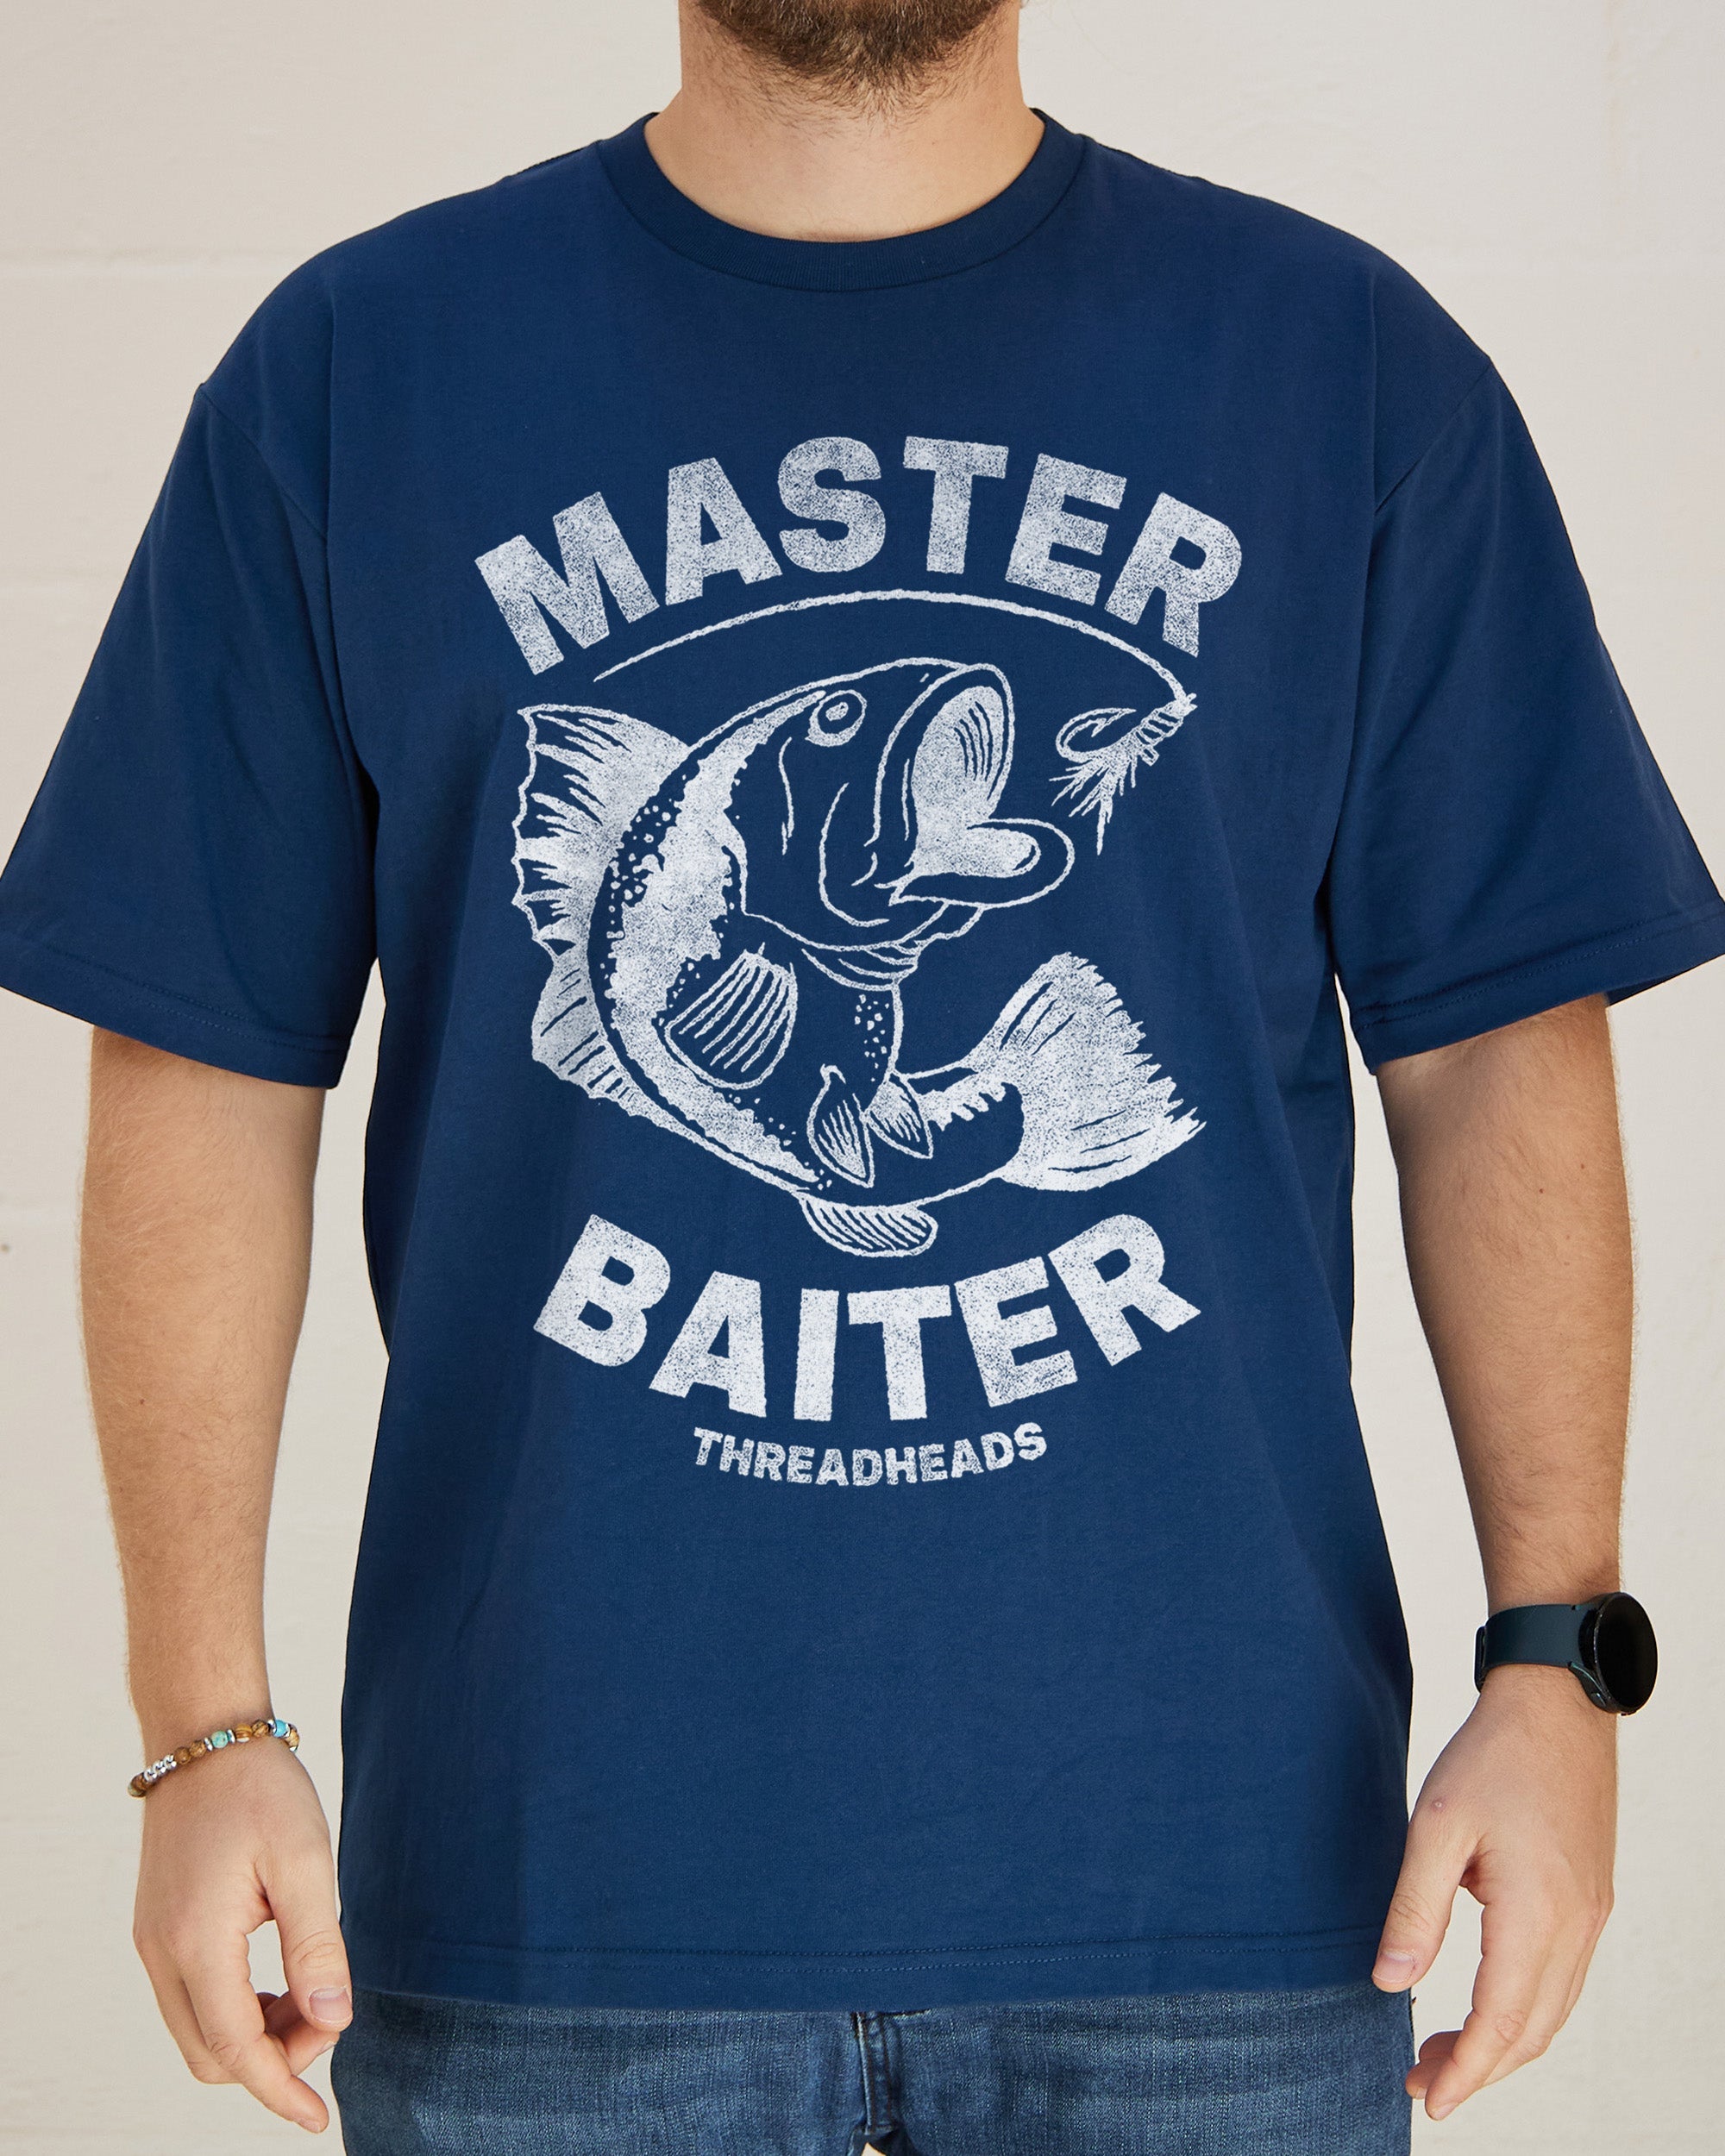 Master Baiter T-Shirt, Funny Aussie T-Shirt Australia